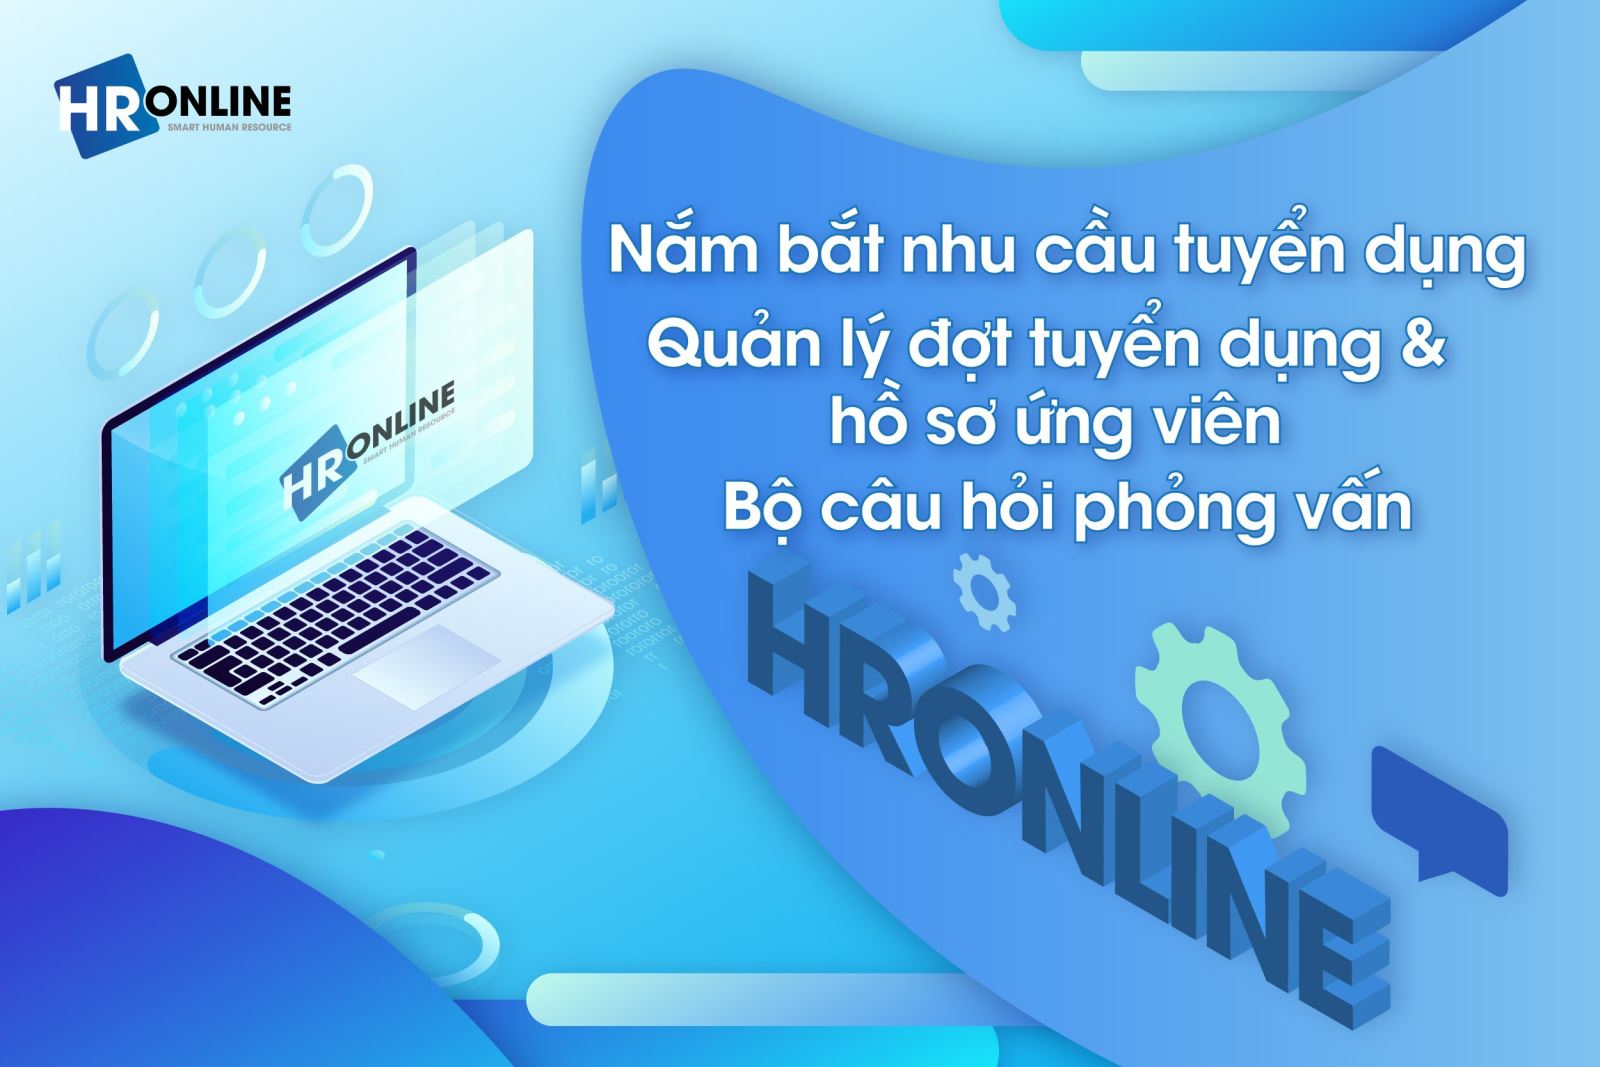 Tuyển dụng nhân sự hiệu quả với phần mềm HrOnline